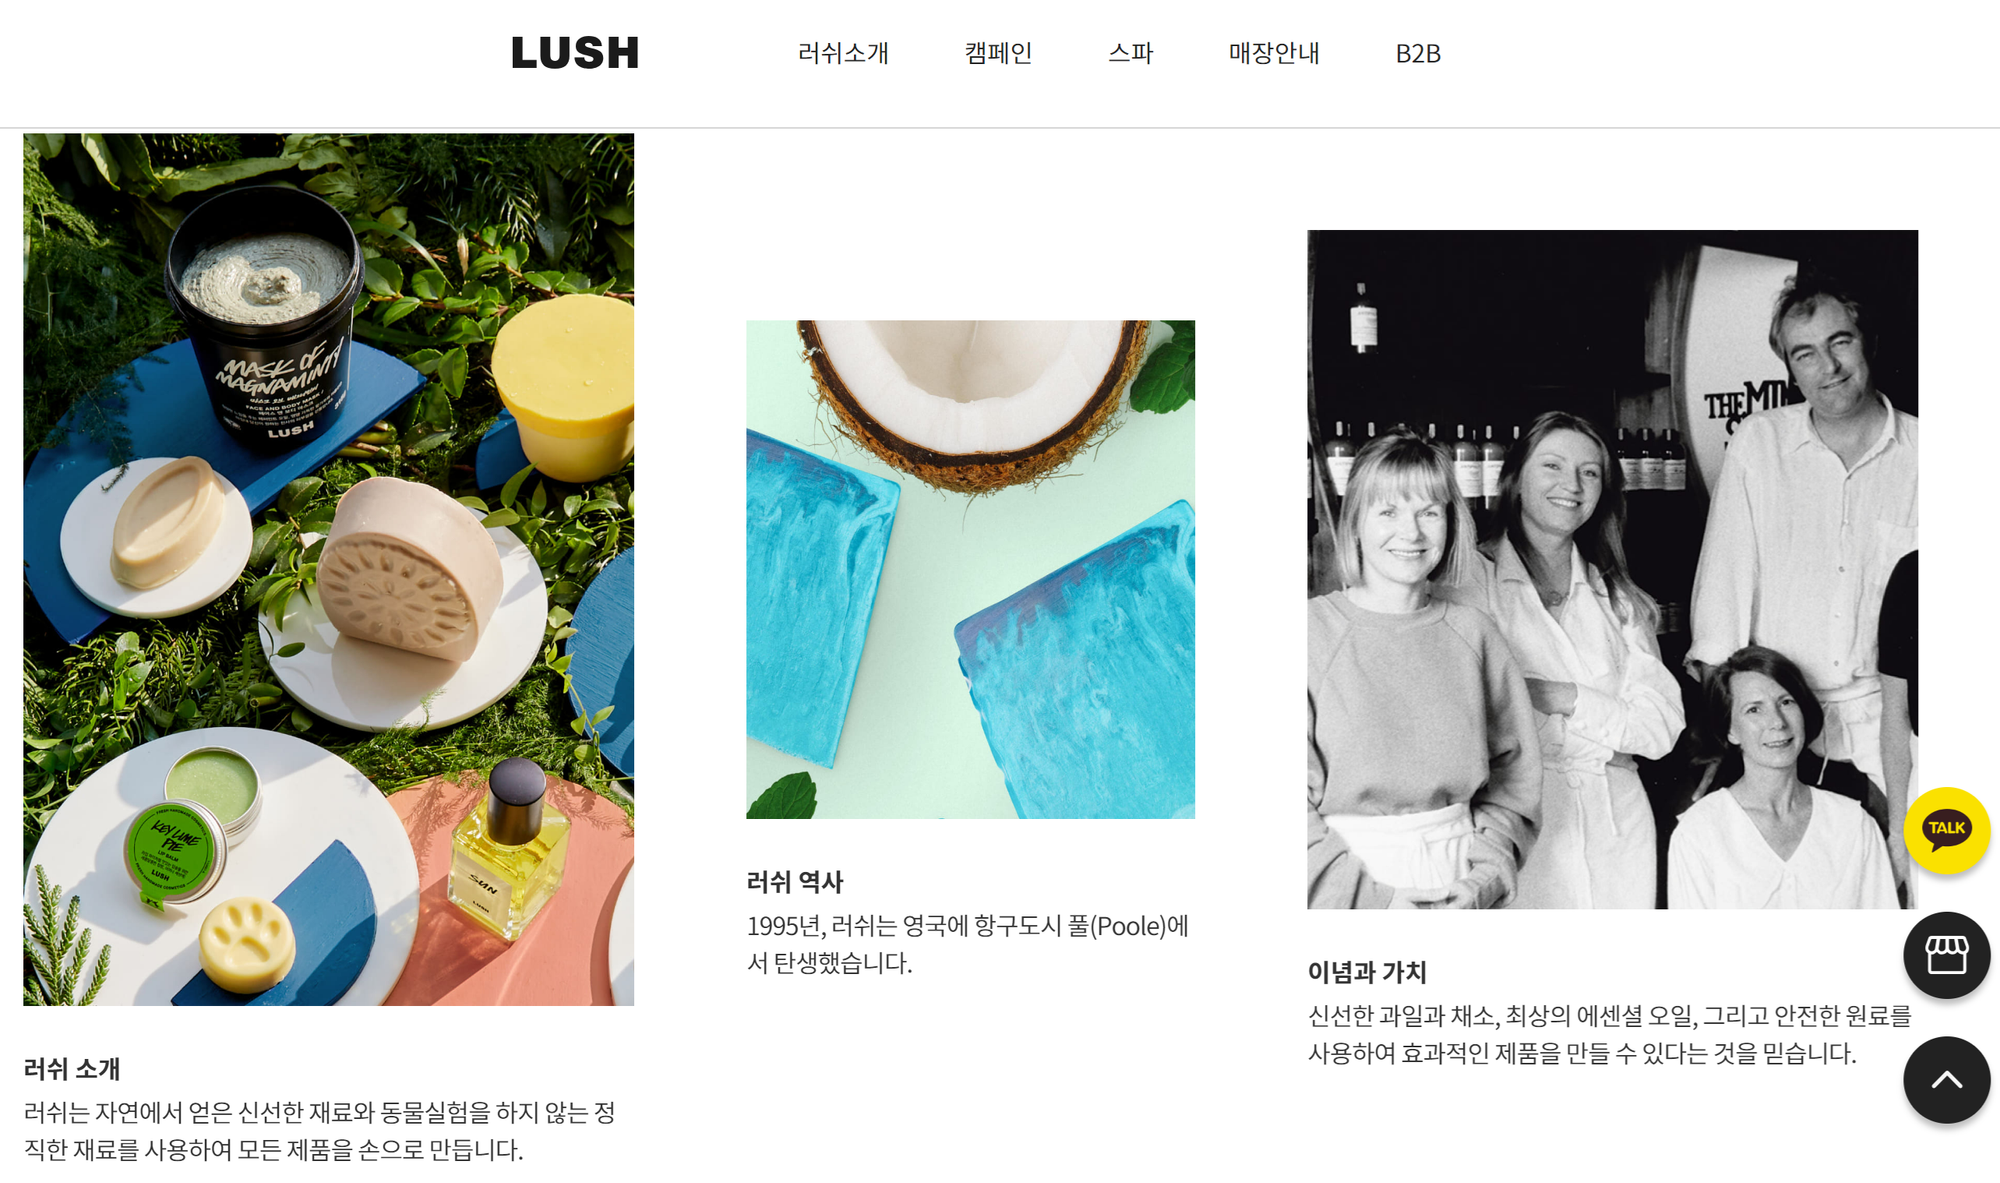 LUSH 브랜드의 웹사이트 화면, 러쉬 브랜드에 대한 소개와 역사, 이미지 3개와 텍스트 3개